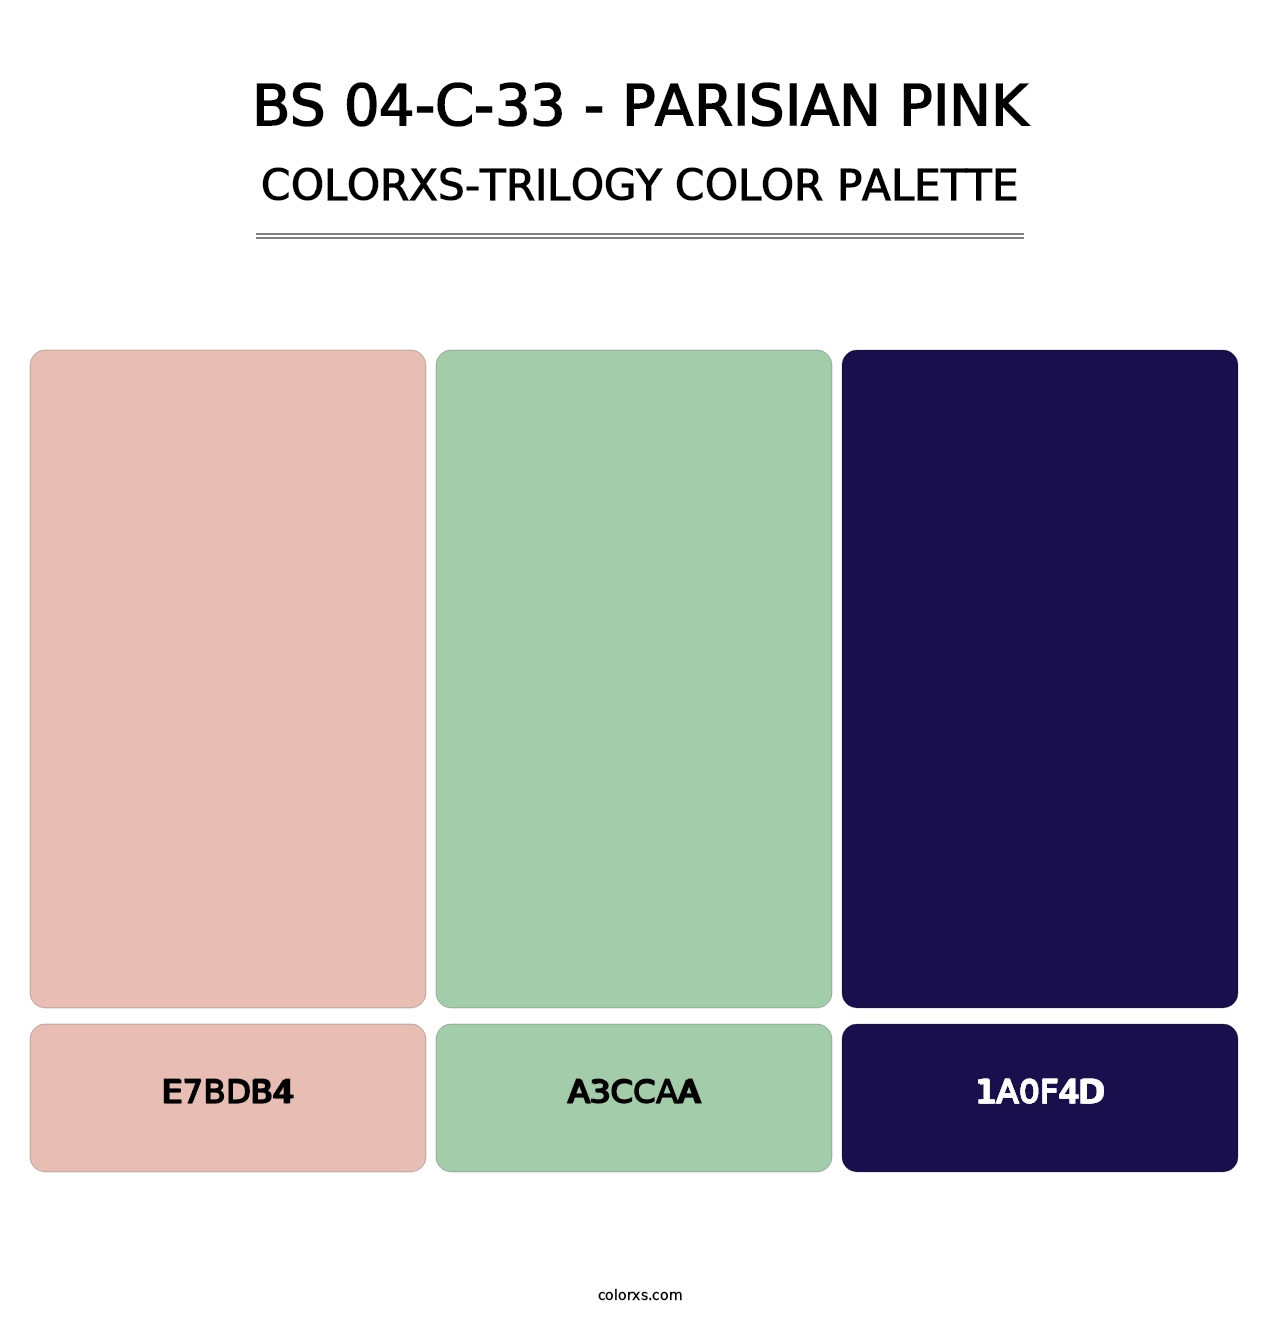 BS 04-C-33 - Parisian Pink - Colorxs Trilogy Palette